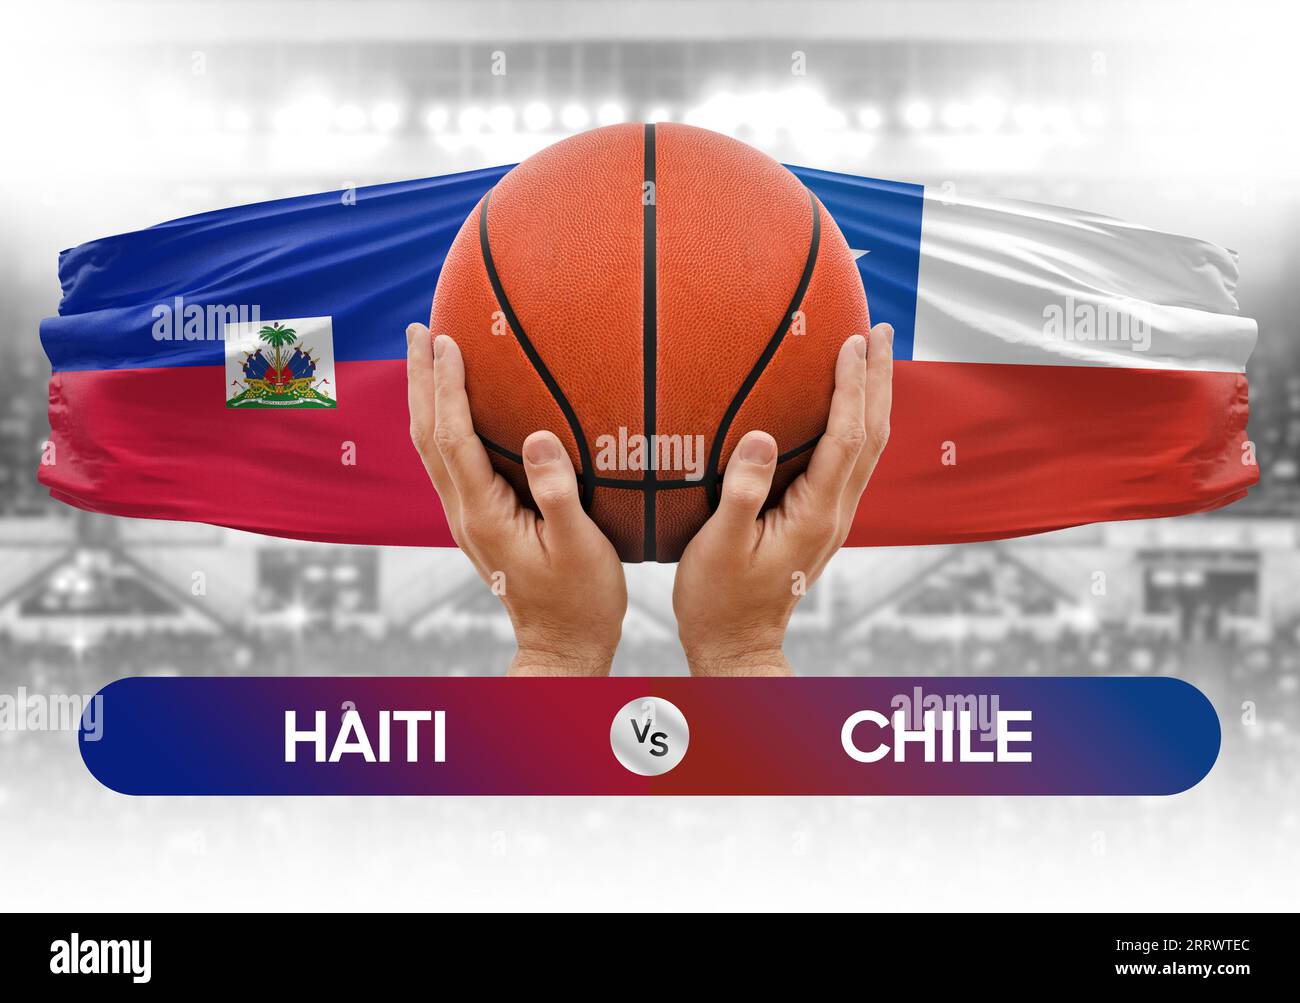 Haiti vs Chile nationale Basketballmannschaften Basketballspiel Wettbewerb Cup Konzept Bild Stockfoto